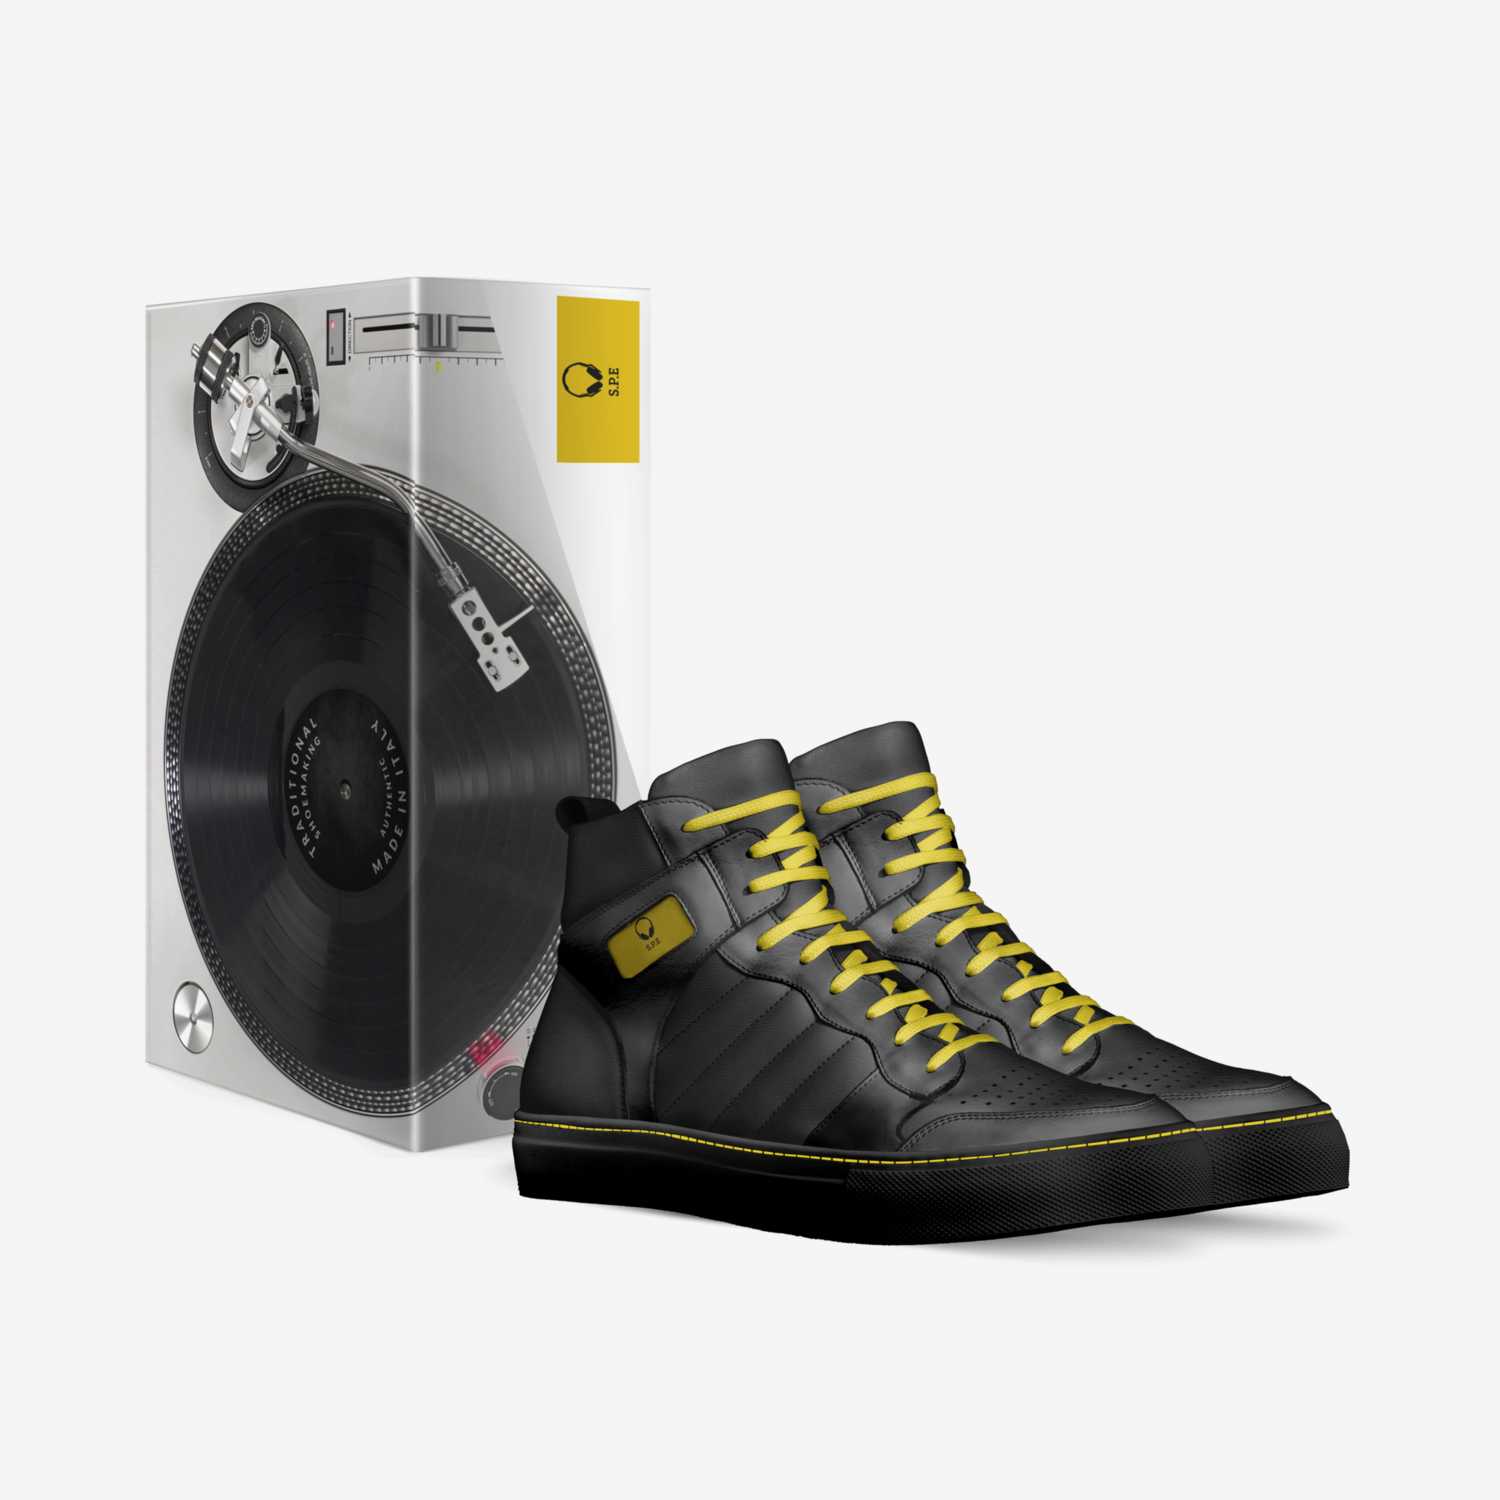 S.P.E custom made in Italy shoes by Casanova De'Vaughn | Box view